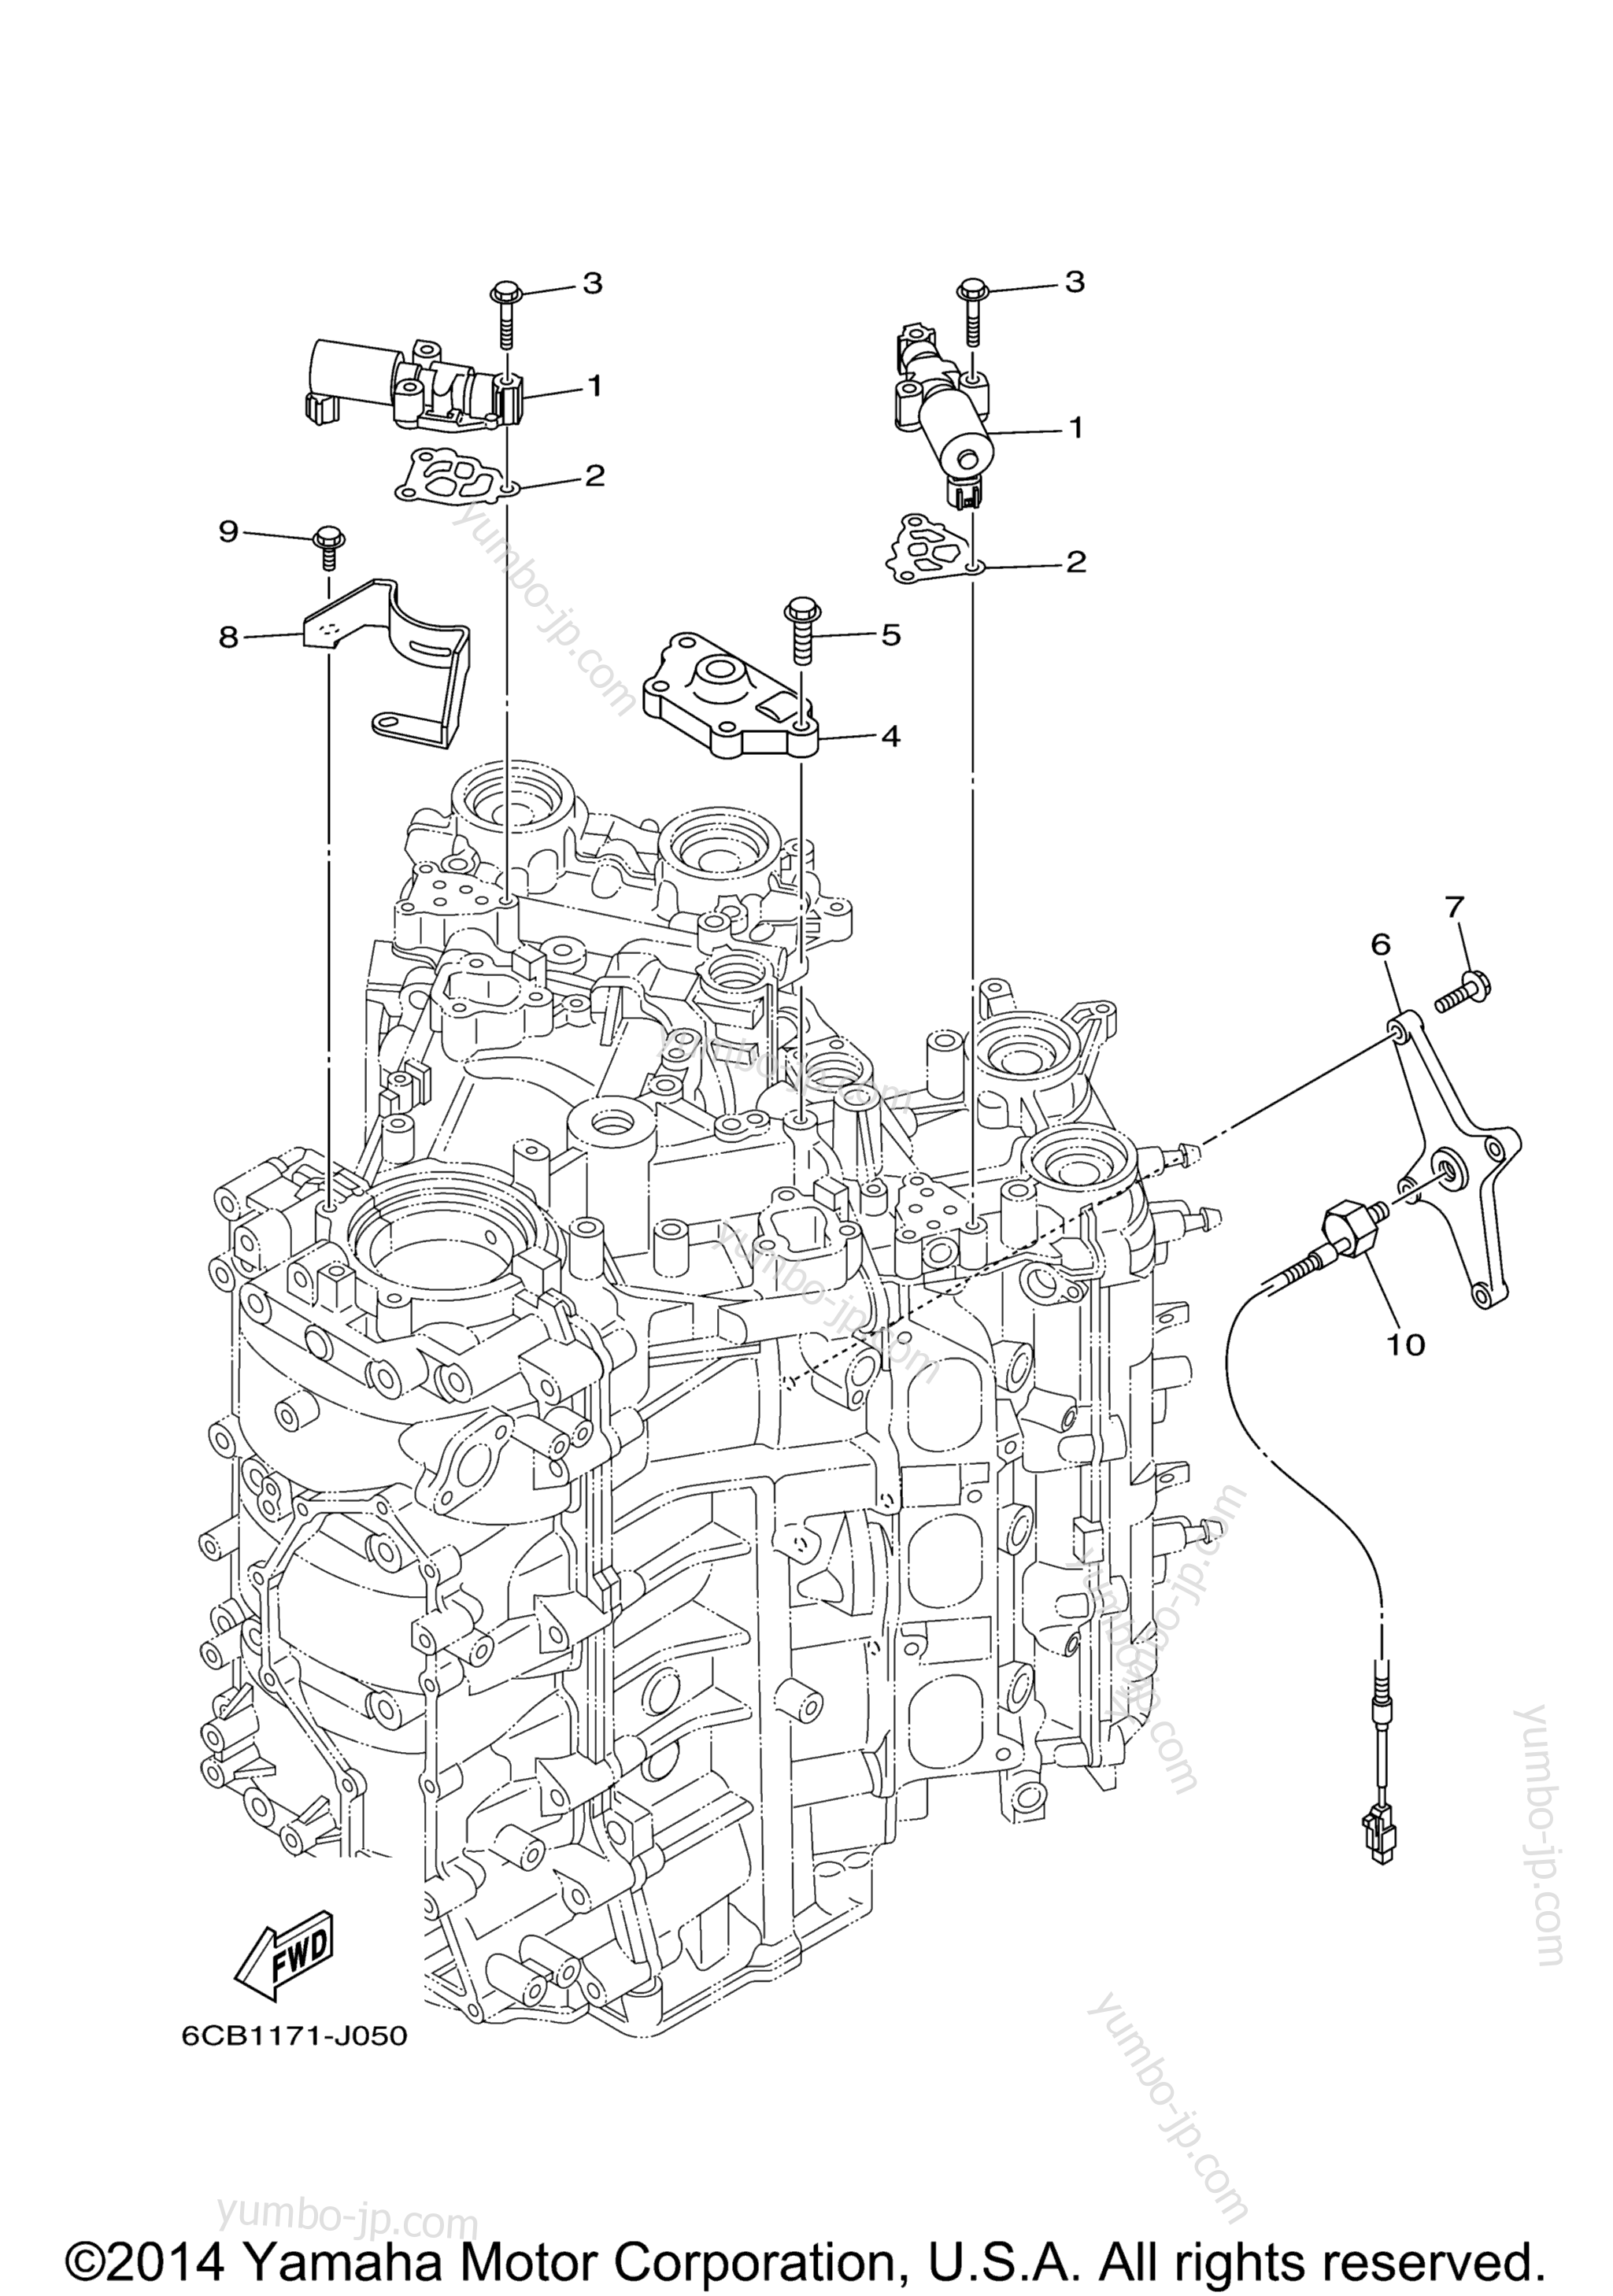 Cylinder Crankcase 3 для лодочных моторов YAMAHA LF300UCA_0 (0112) 2006 г.